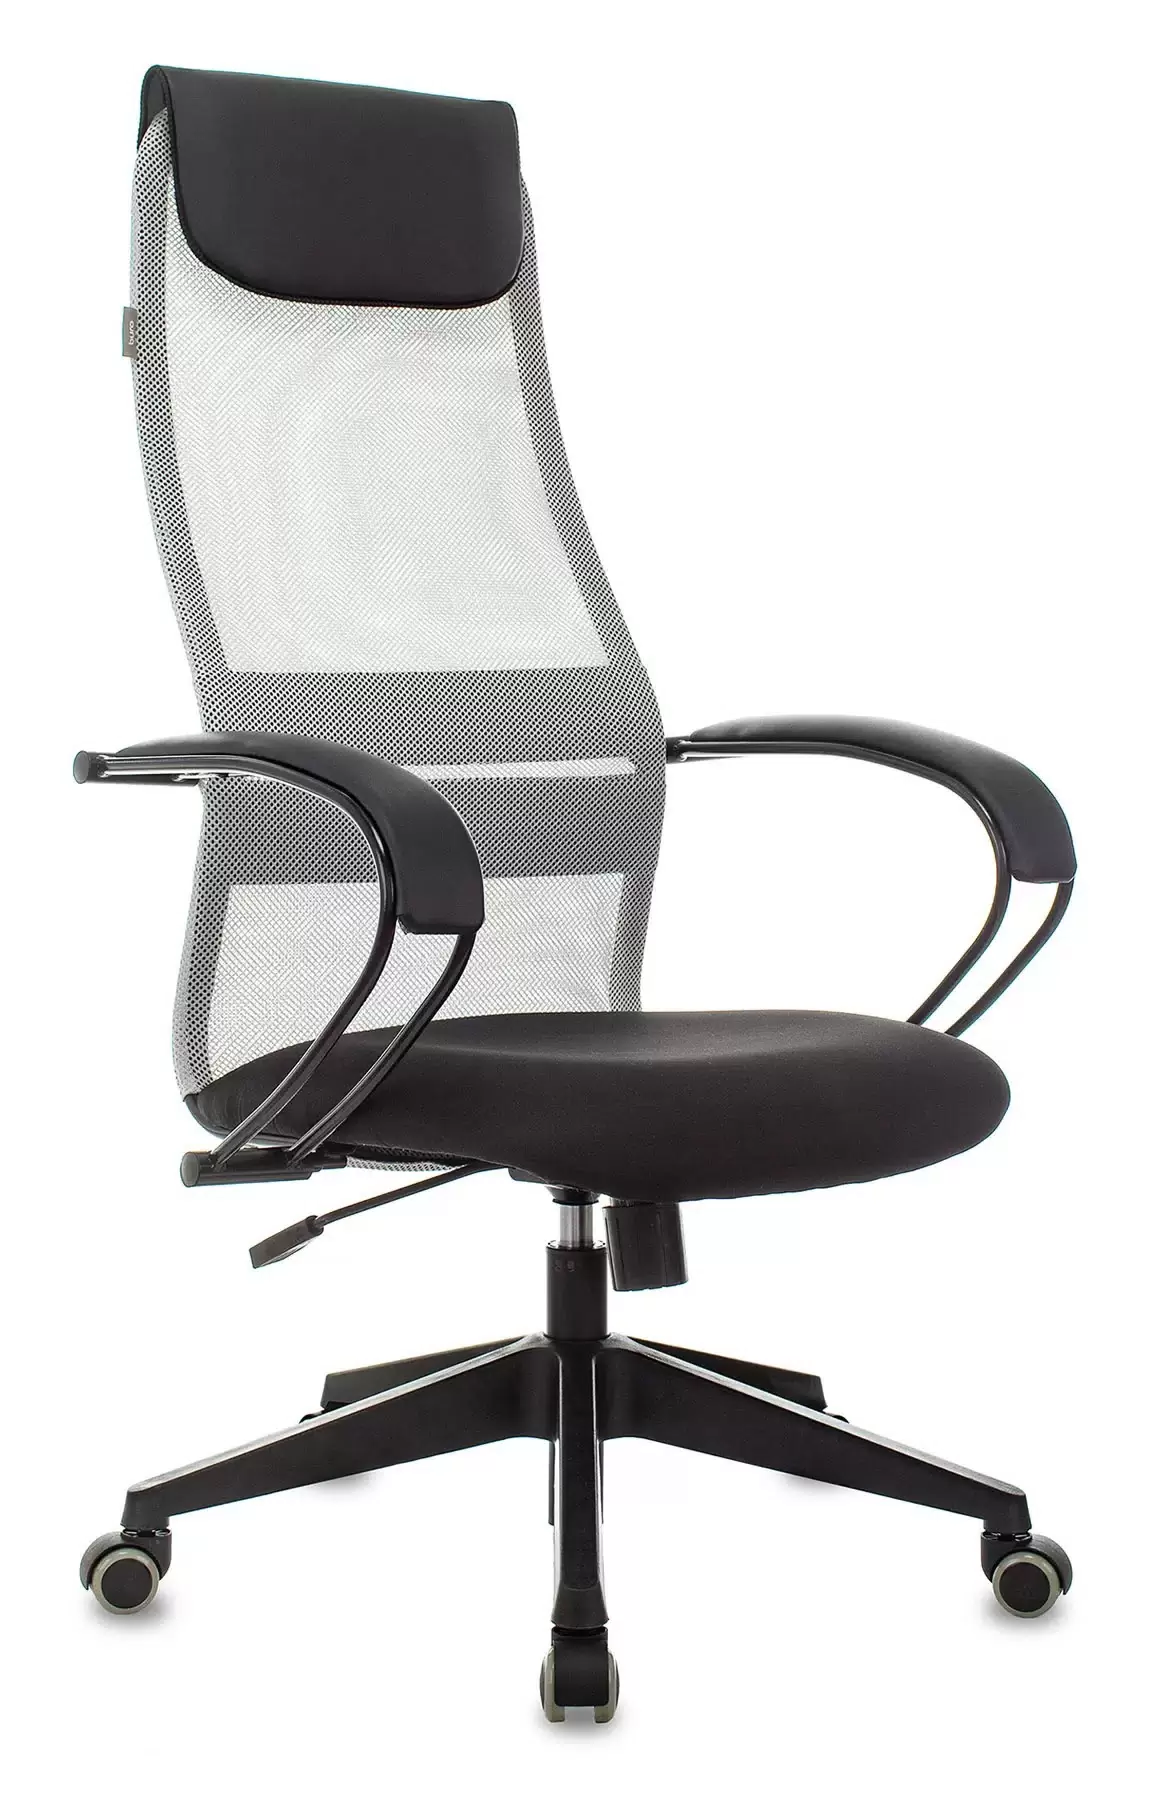 Характеристики - кресло руководителя Бюрократ CH-607 светло-серый TW-02 сиденье черный сетка/ткань с подгол 